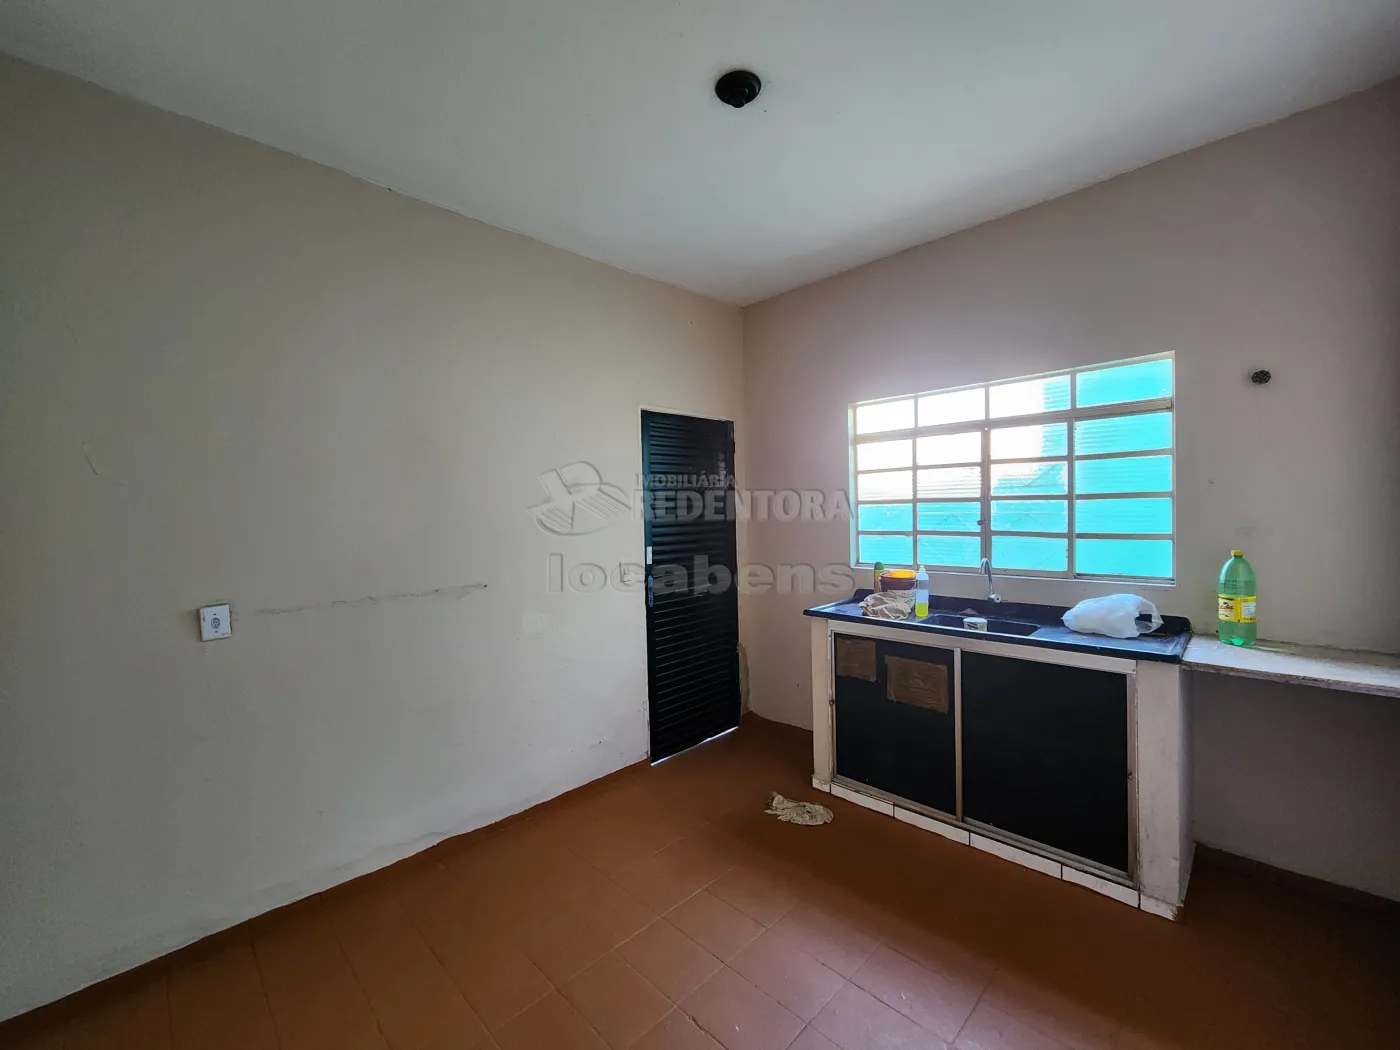 Alugar Casa / Padrão em São José do Rio Preto apenas R$ 850,00 - Foto 3